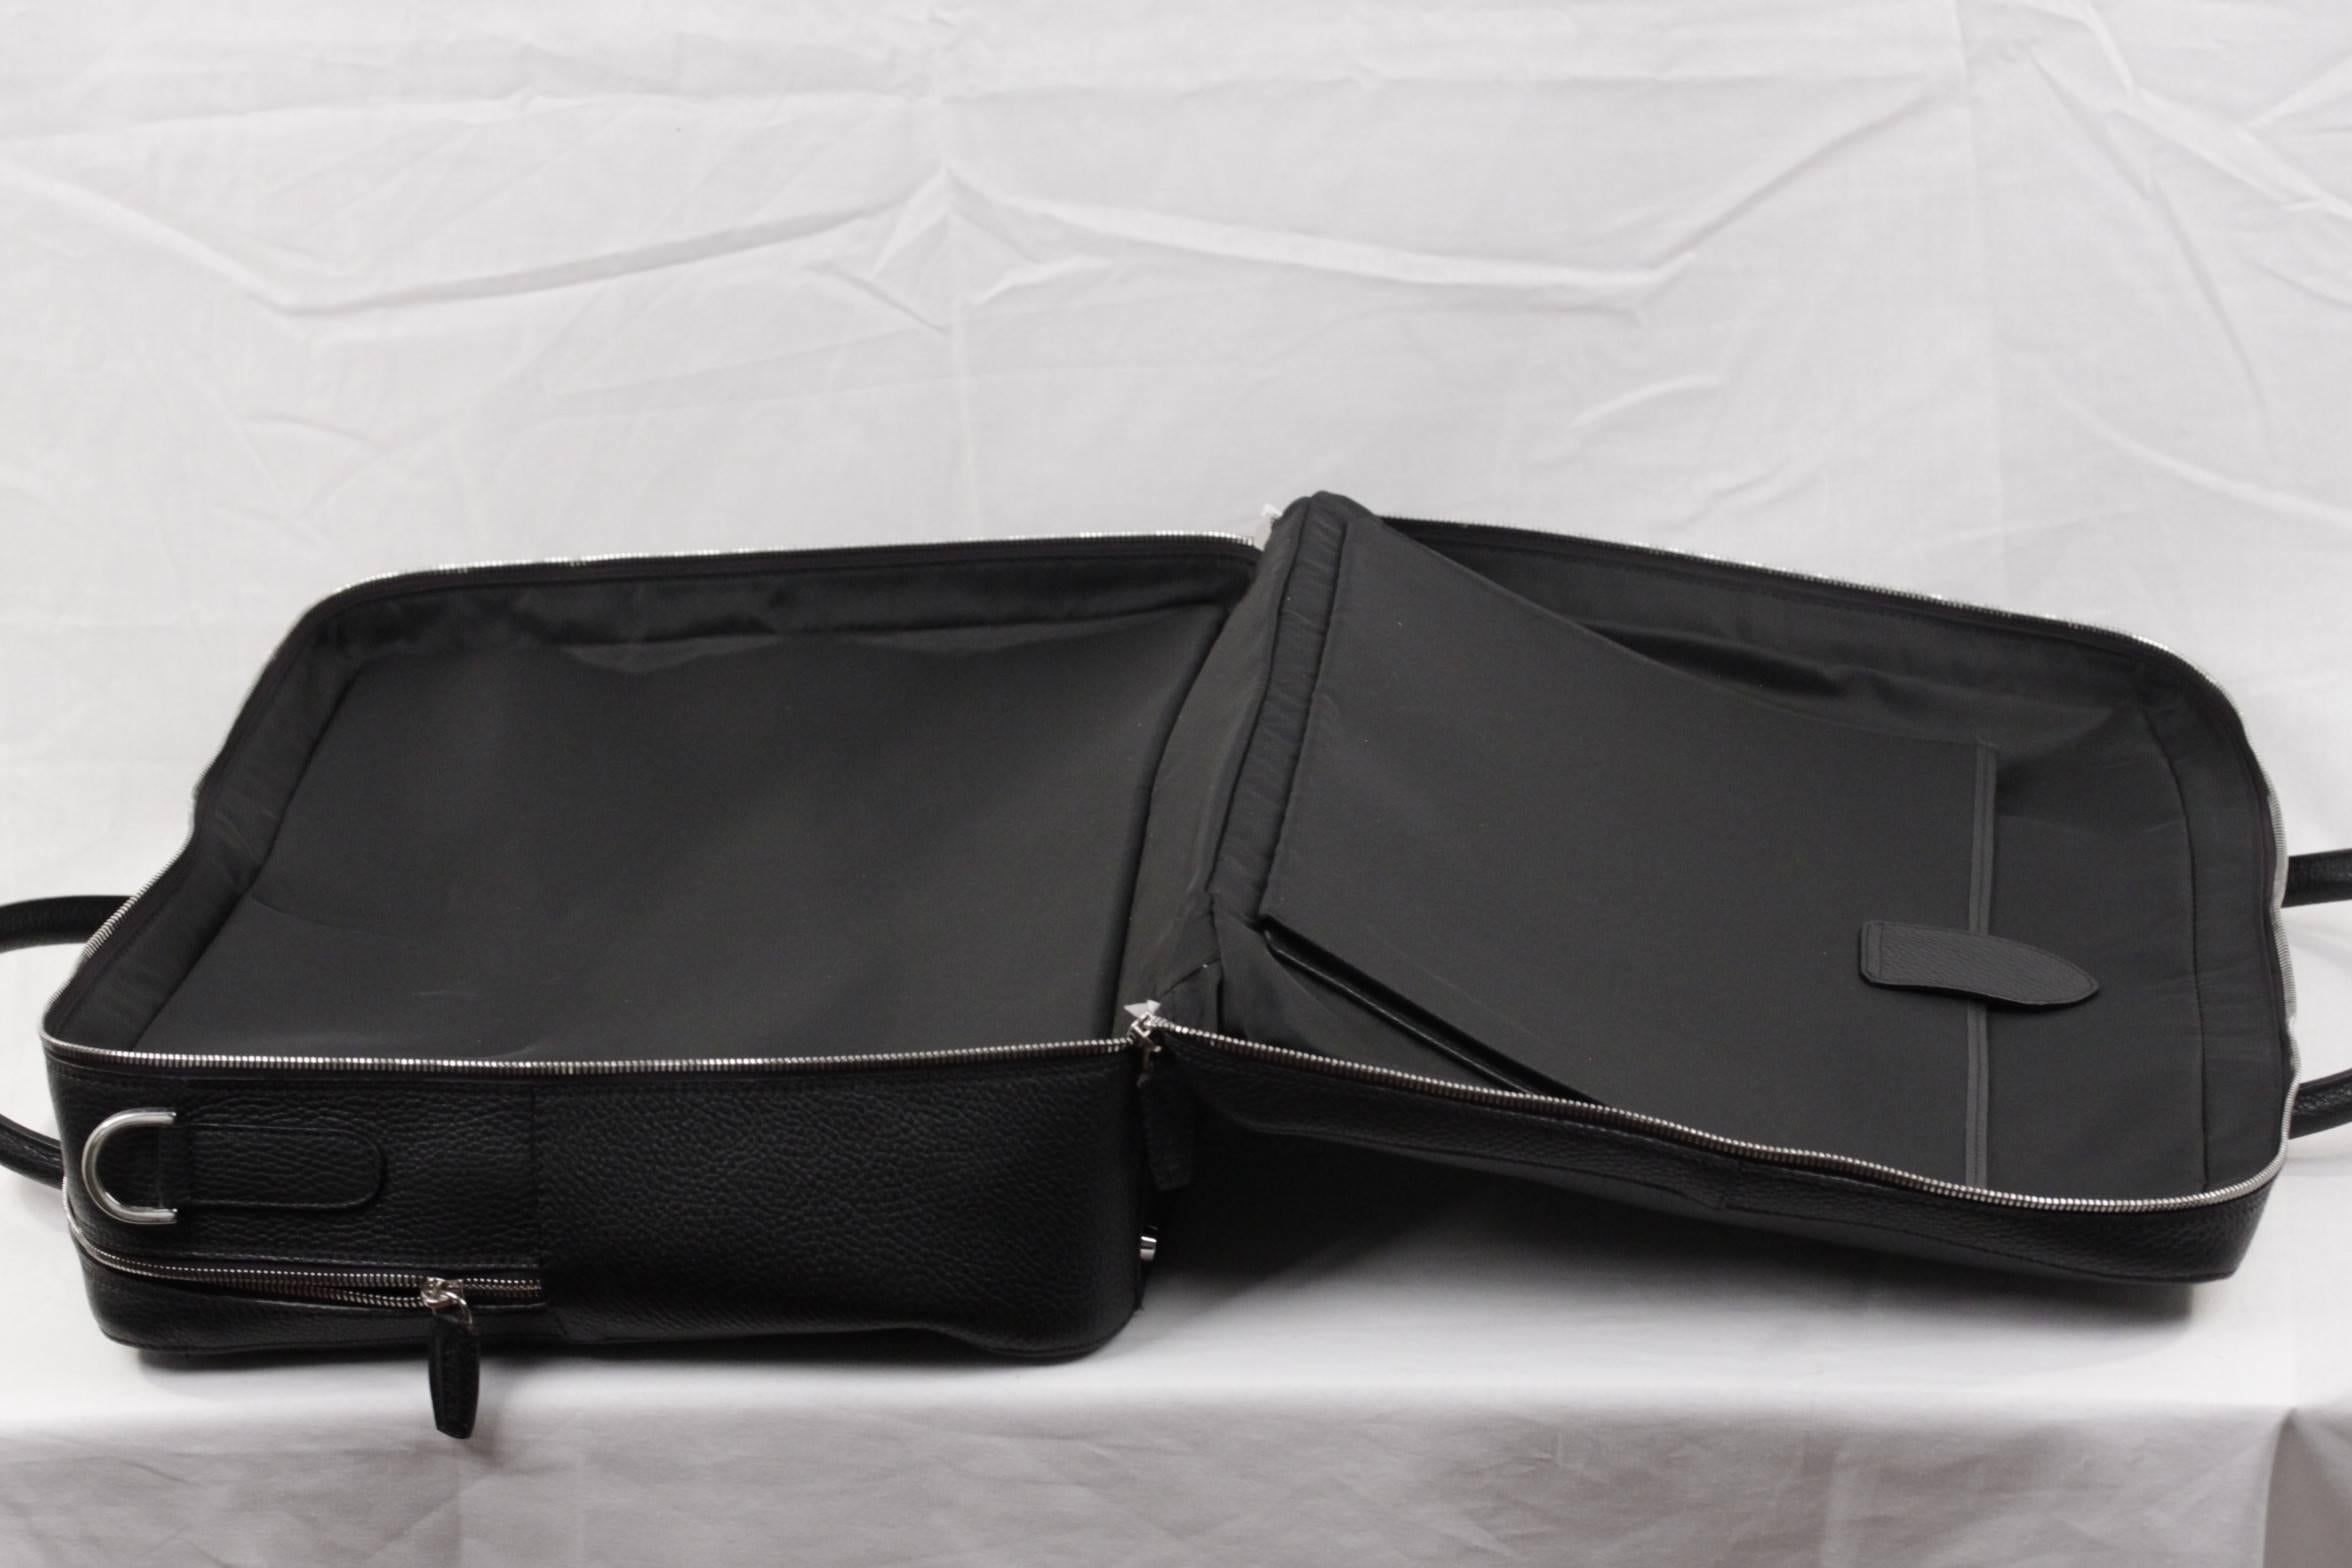 Men's BATTISTONI Black Leather LARGE BRIEFCASE Handbag WORK Business BAG w/ Strap